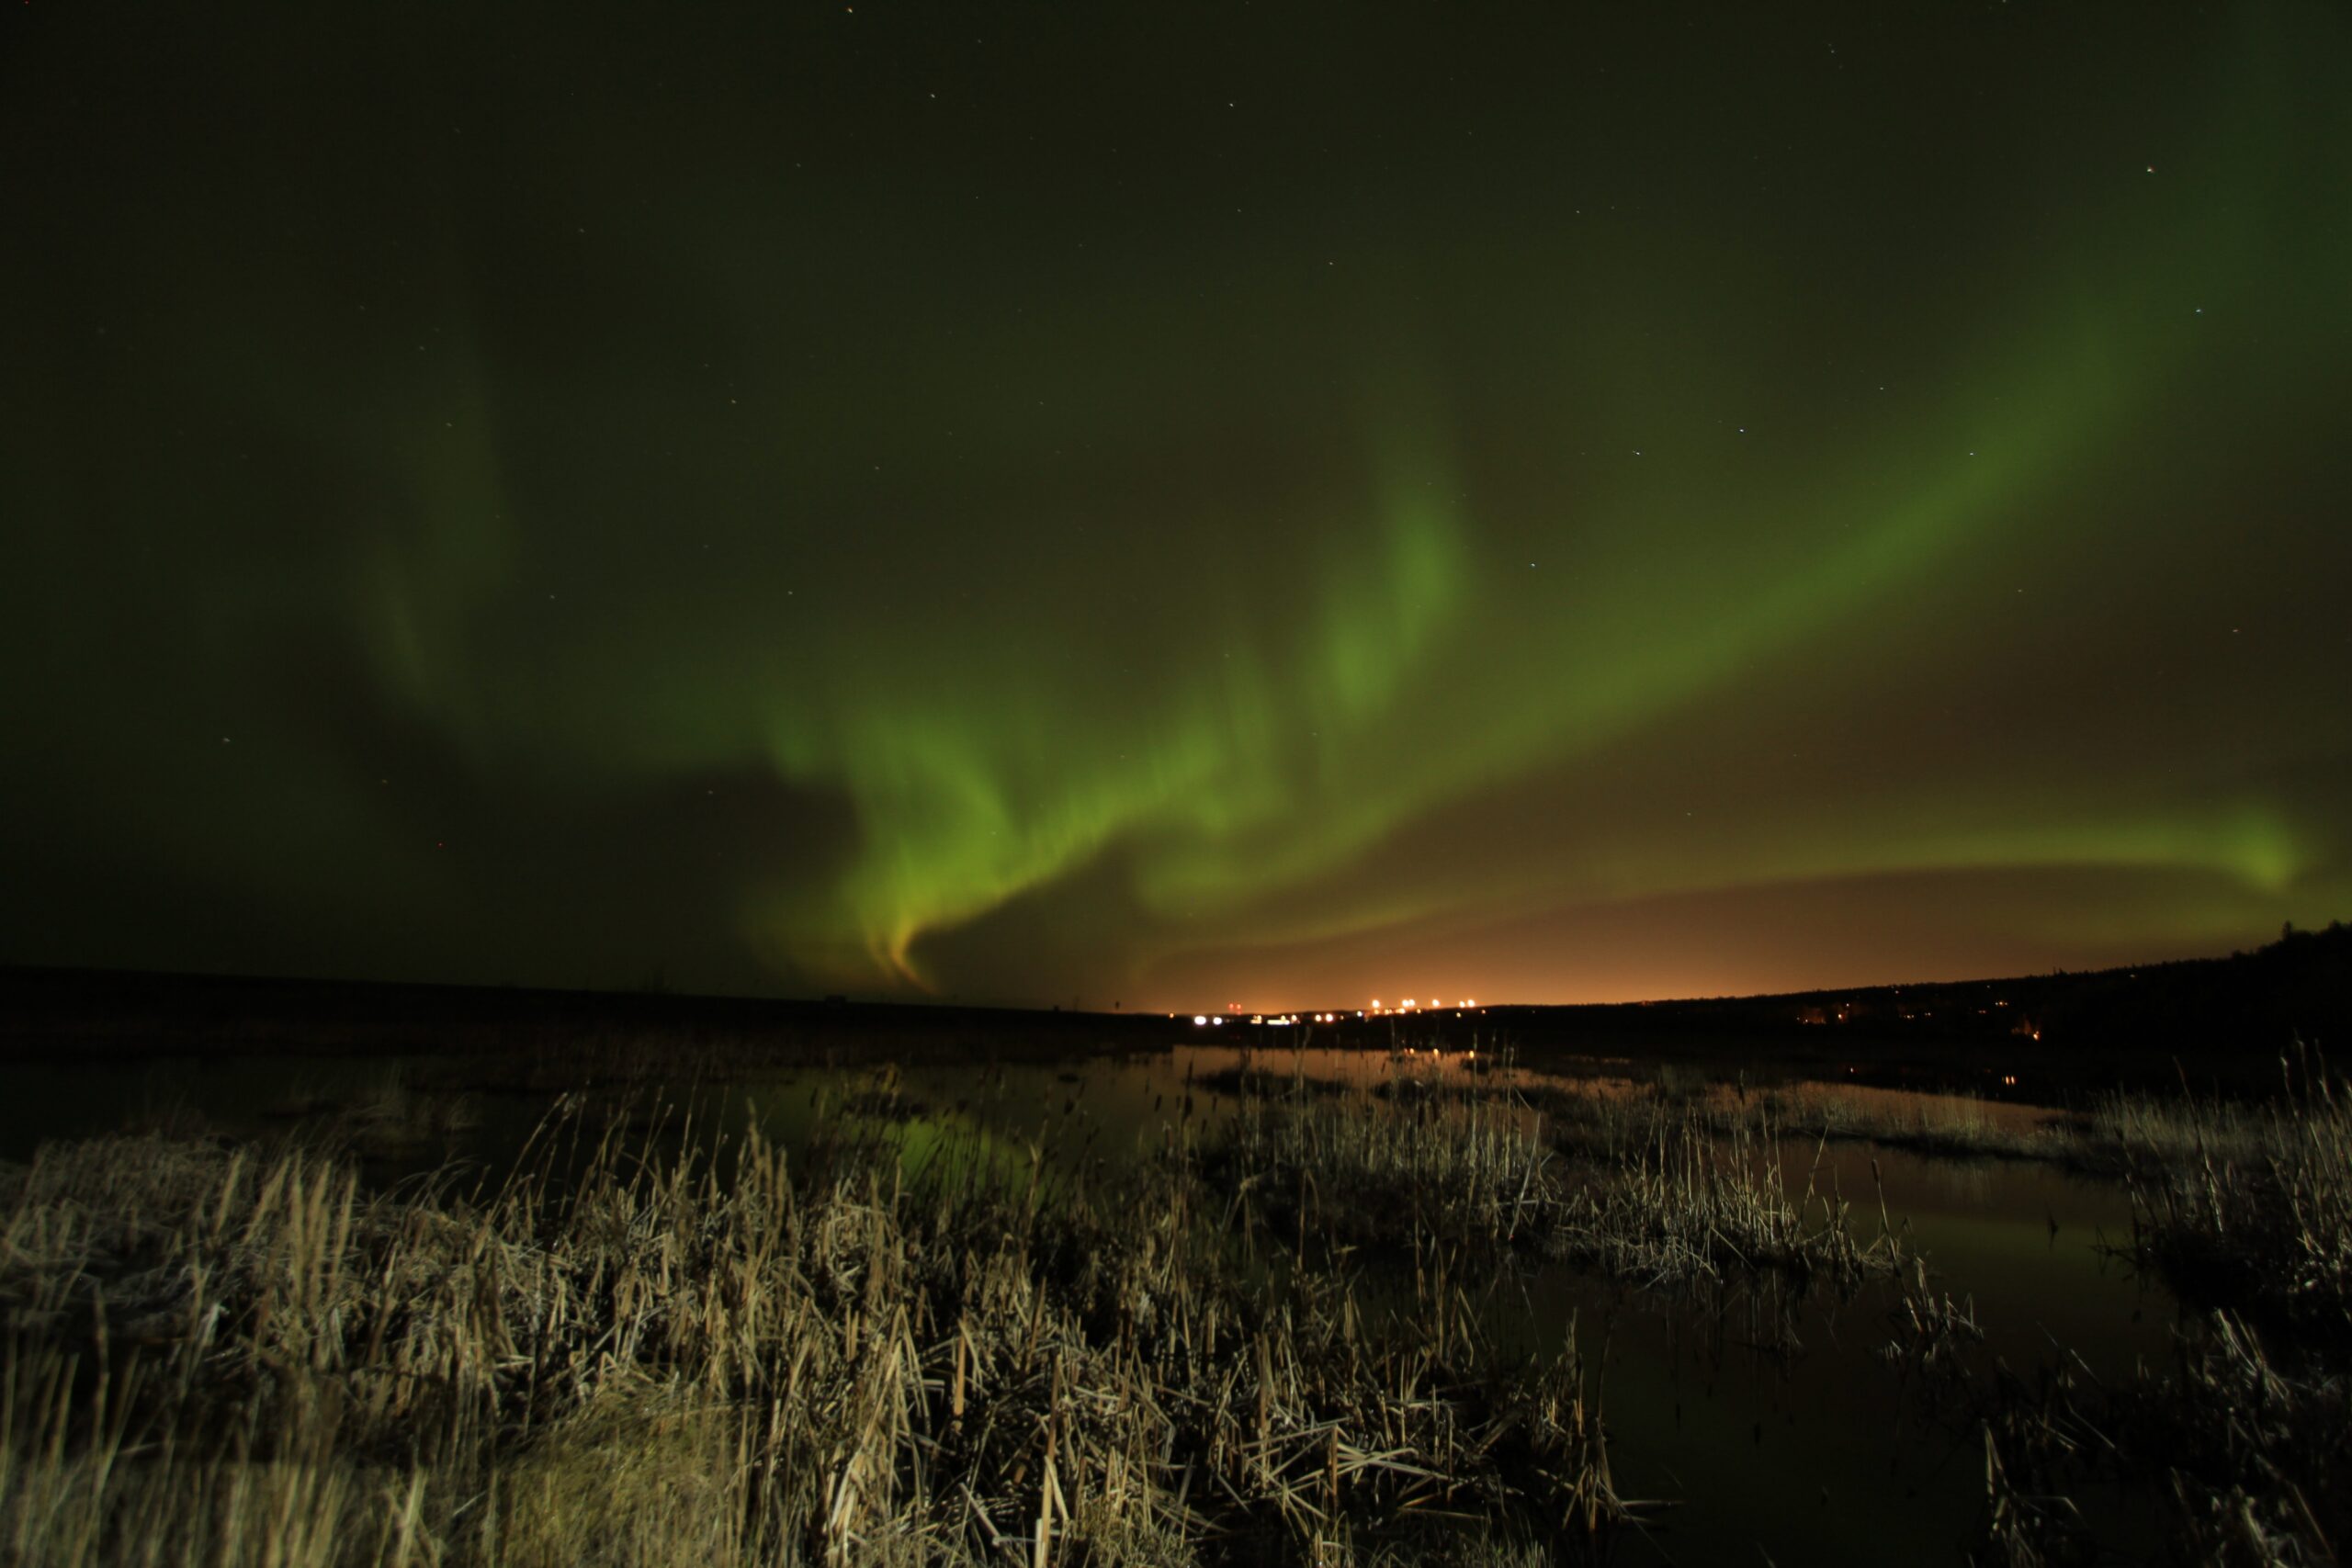 Northern lights (aurora borealis) illuminate the sky